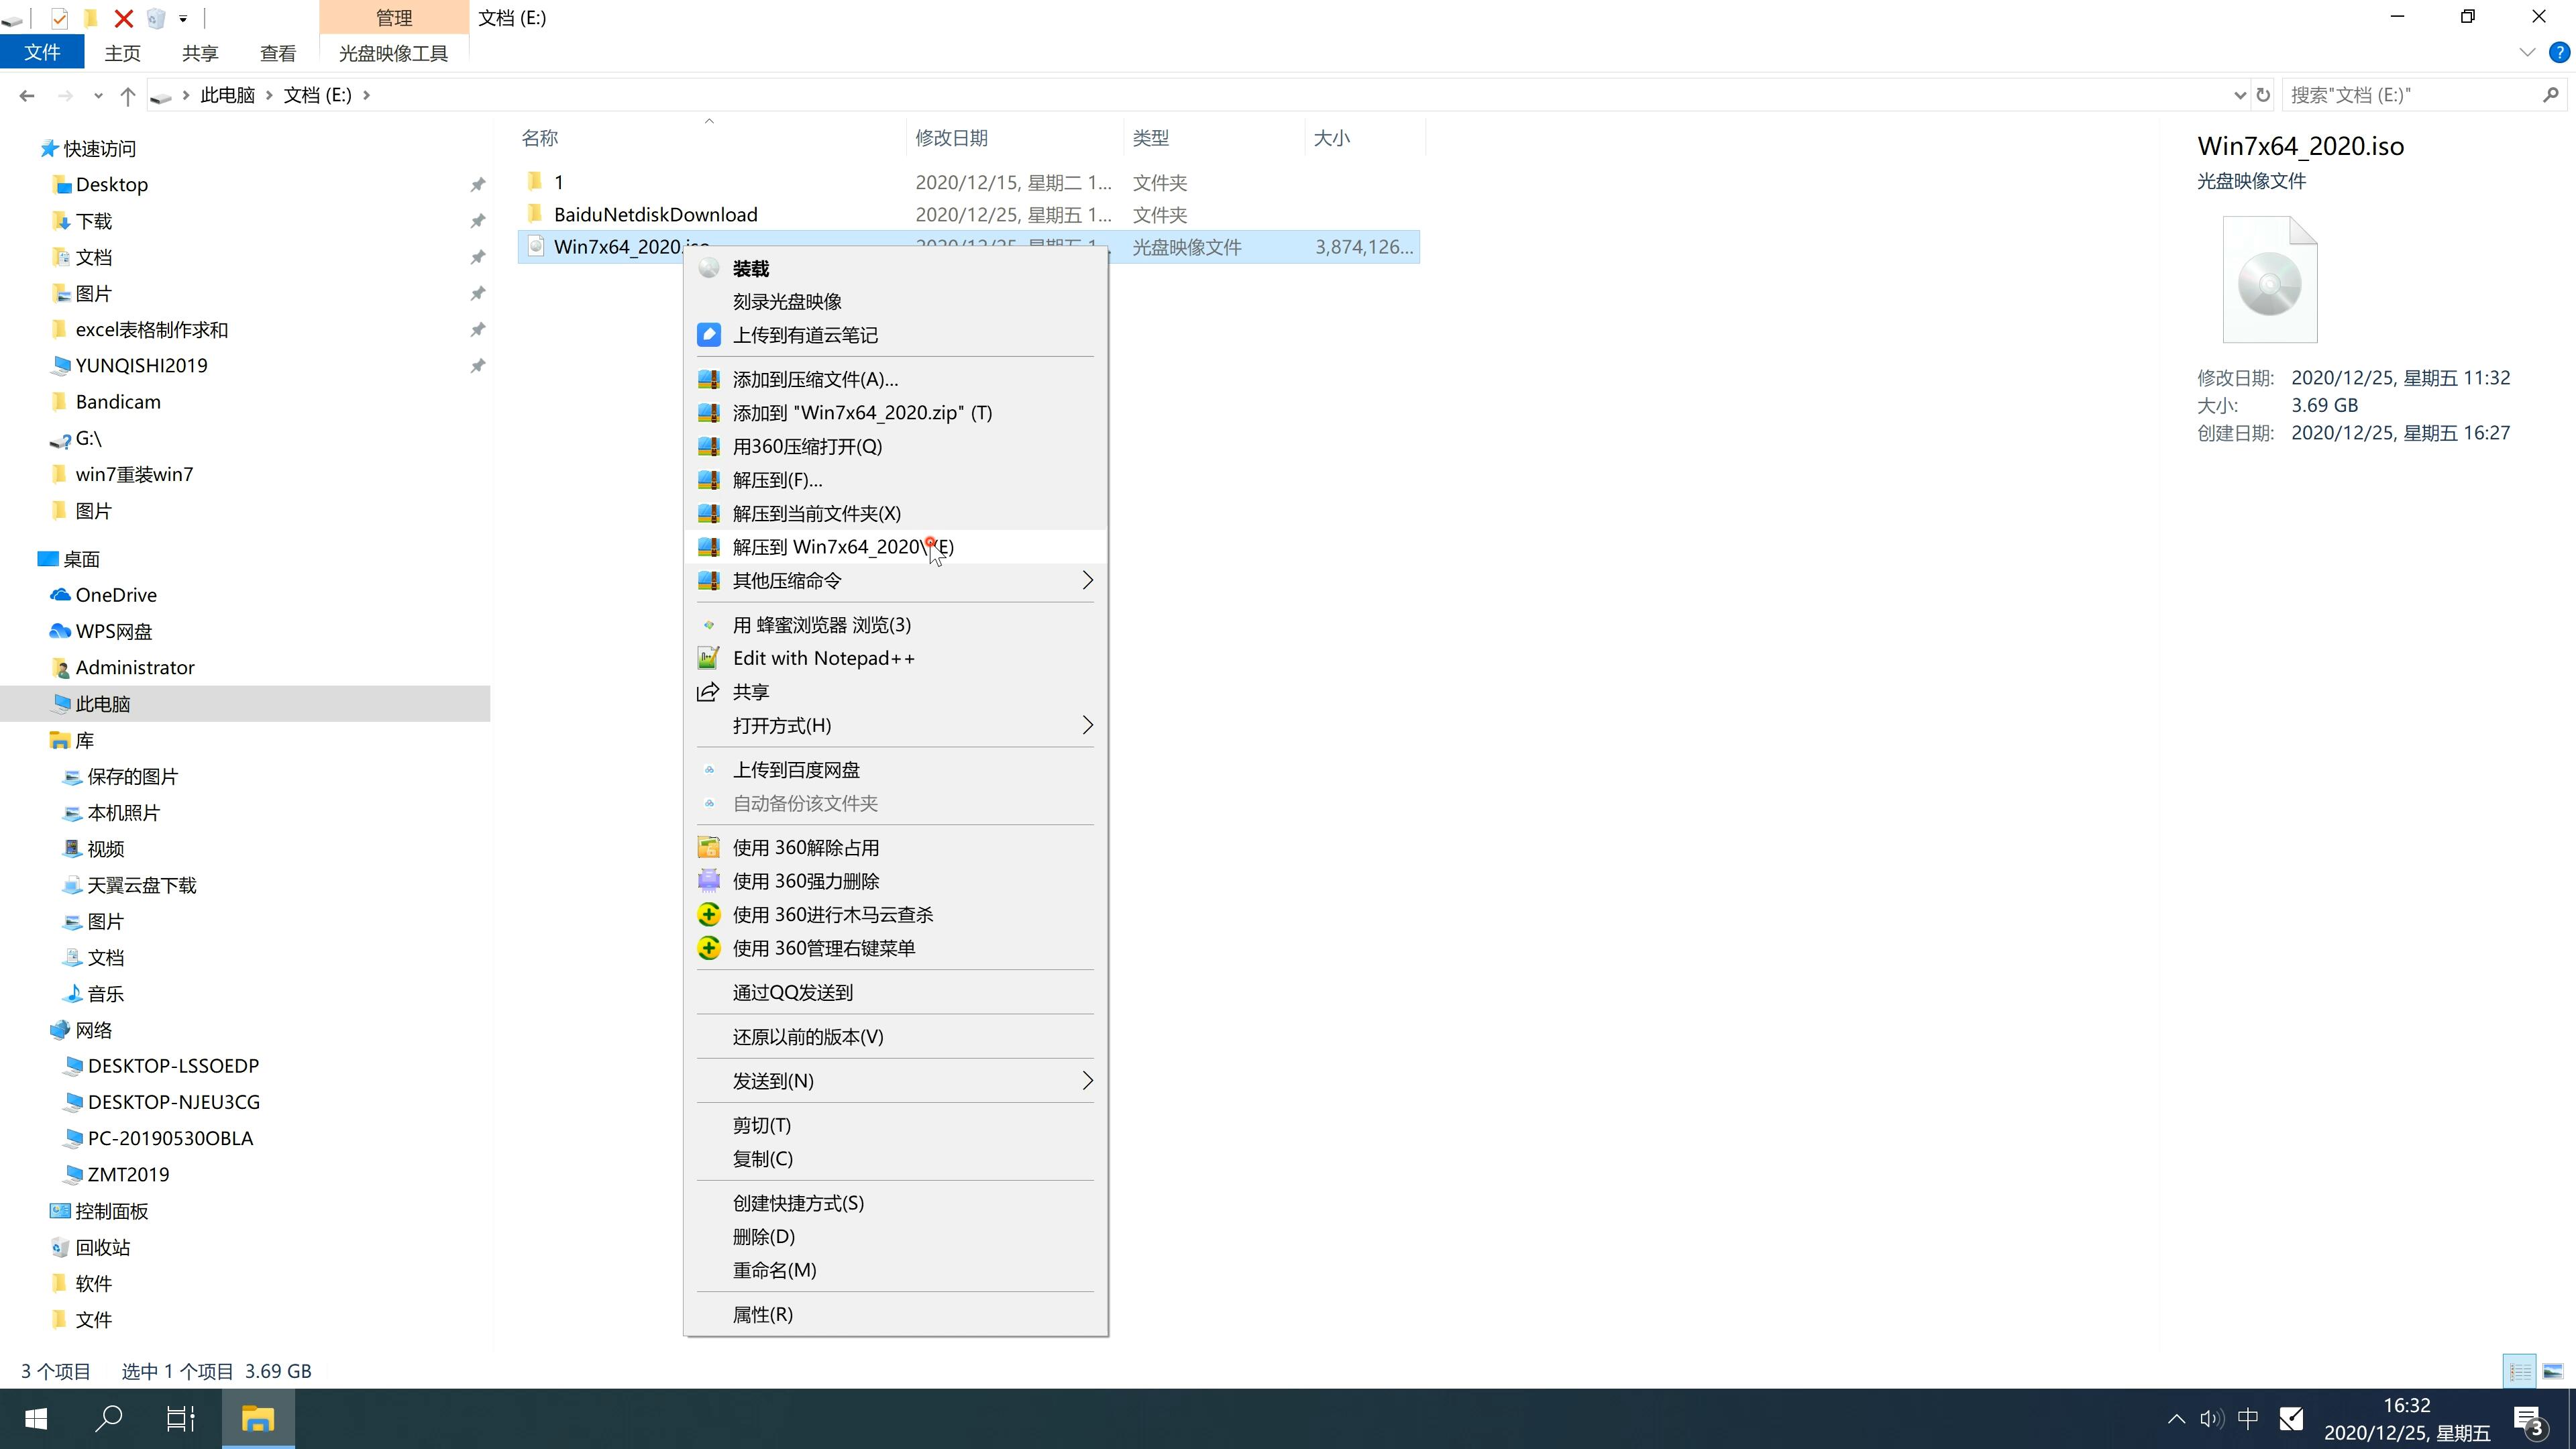 新版风林火山系统 Ghost windows7 64 SP1 特别装机版 V2022.10(2)